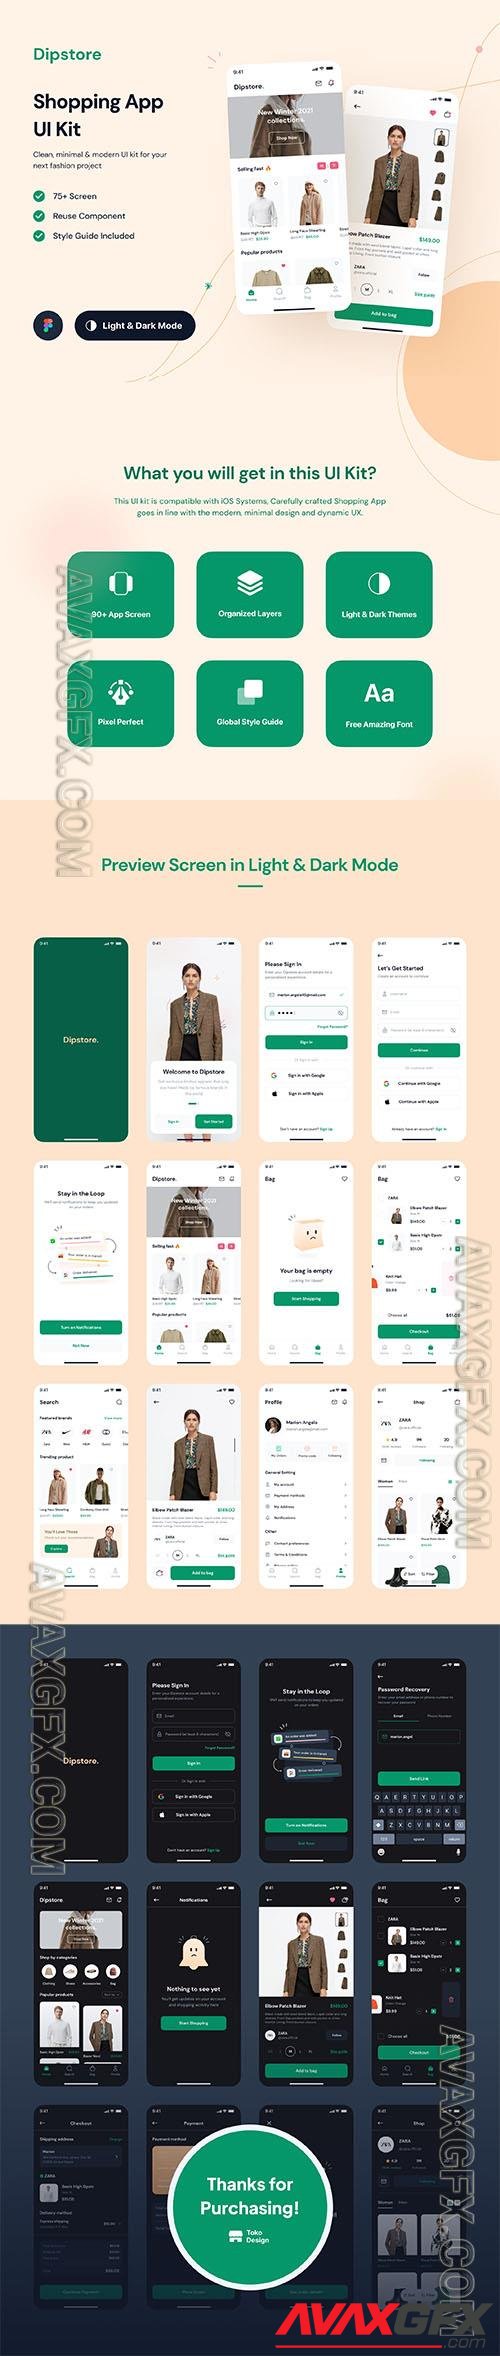 Dipstore - Shopping App UI Kit